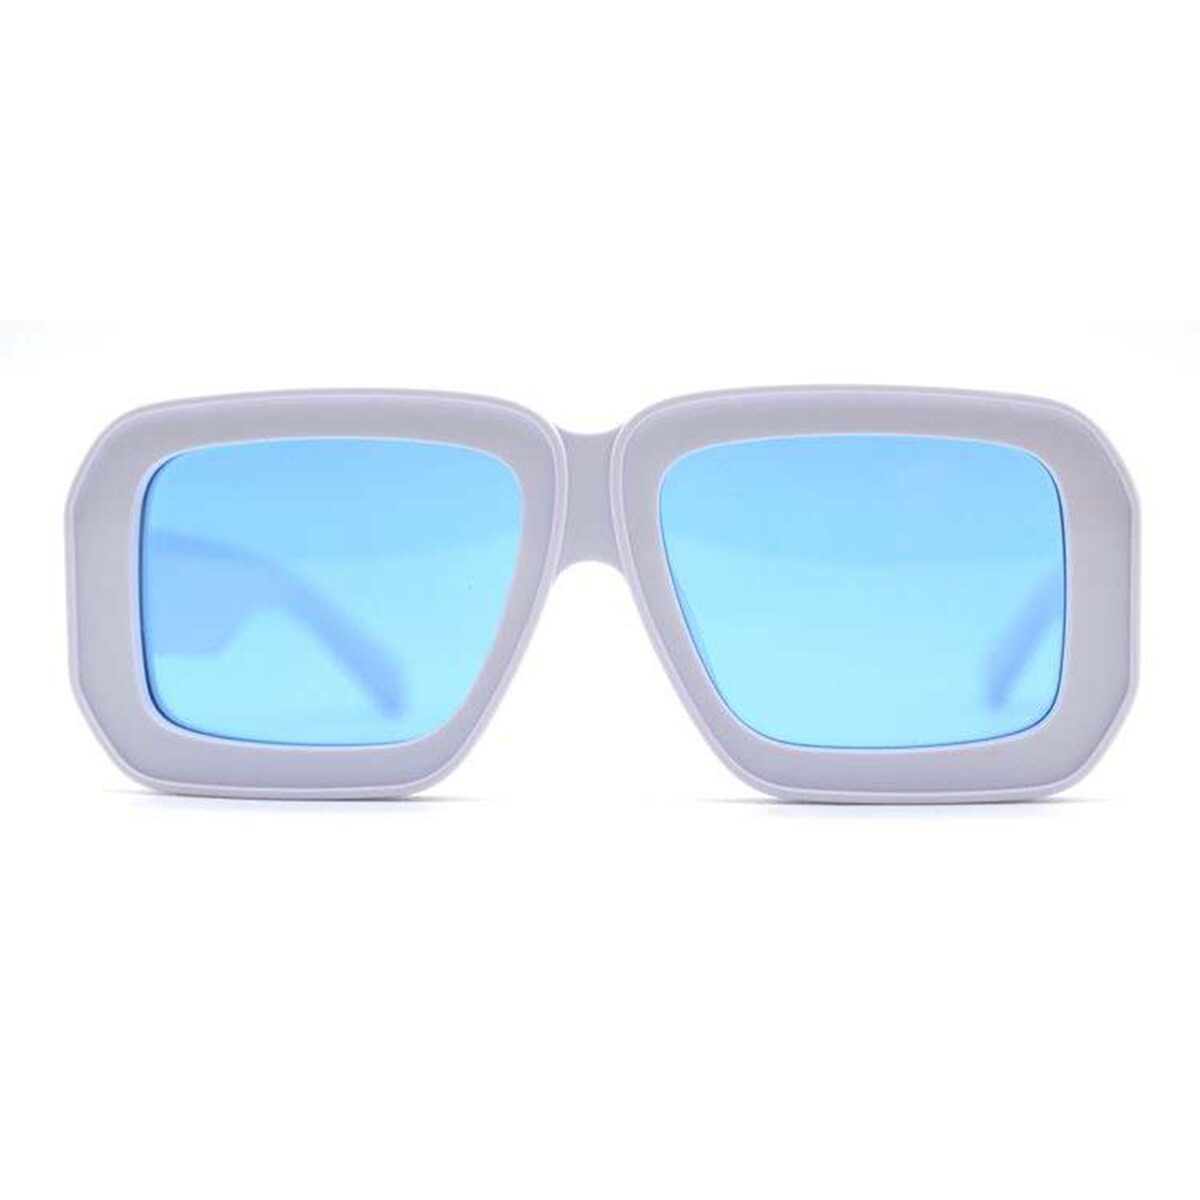 Gafas de sol de lujo Oversized, Supreme de la marca de gafas de lujo AKA SAVRAN, similares a las gafas de sol Loewe Paula's Ibiza Dive in Mask